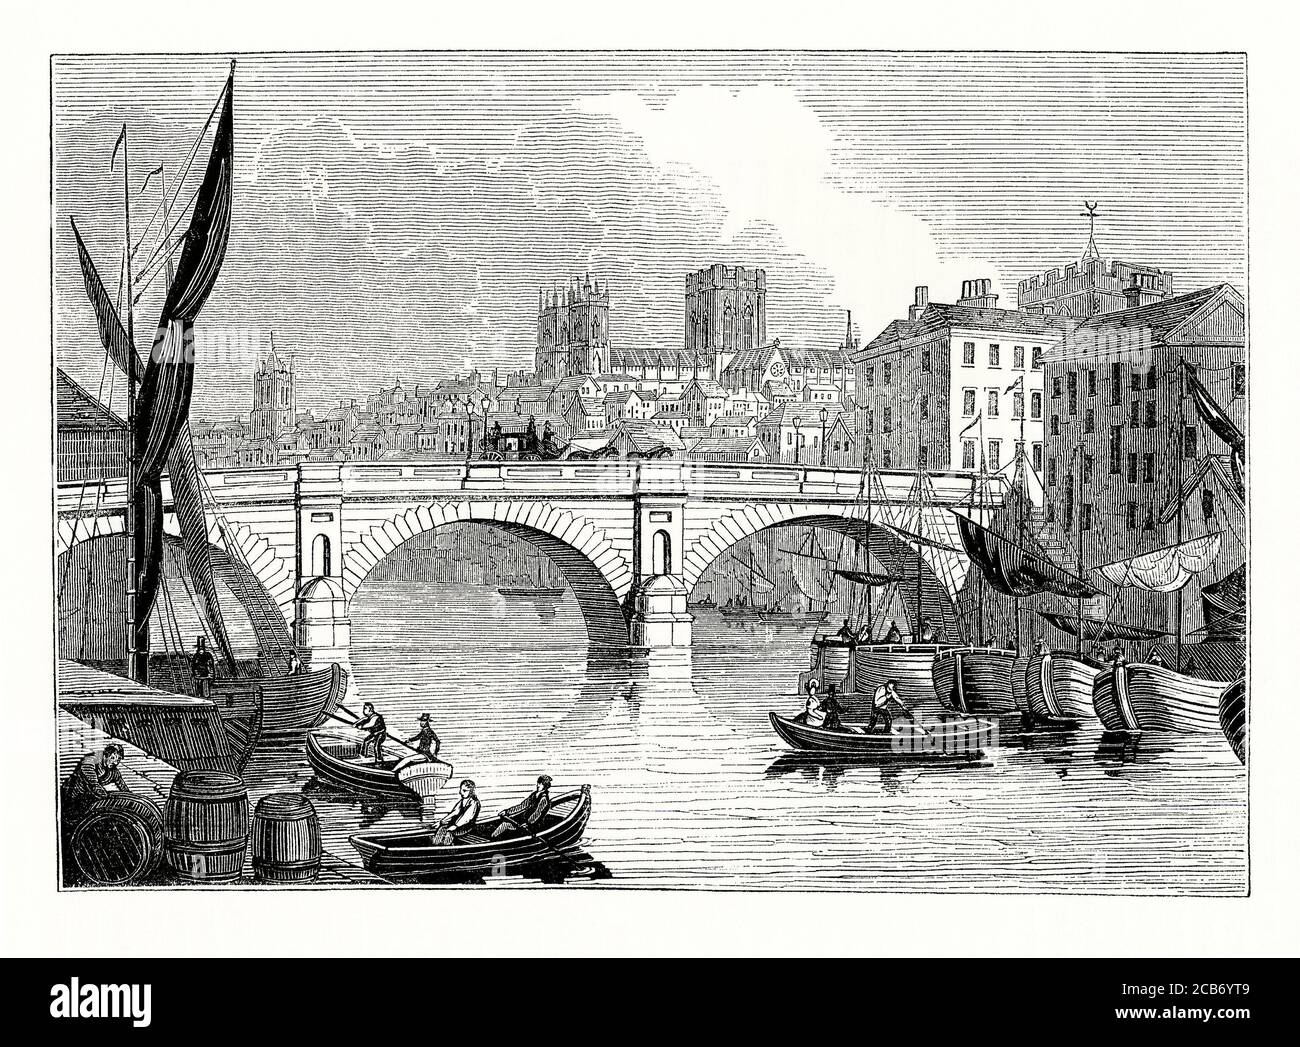 Eine alte Gravur von geschäftigen Fluss Verkehr auf dem Fluss Ouse, York, North Yorkshire, England, Großbritannien in der viktorianischen Zeit. Die Stadt ist bekannt für ihre berühmten historischen Wahrzeichen wie York Minster (hier im Hintergrund) und die Stadtmauern. Im Mittelalter wuchs York als ein wichtiges Handelszentrum für Wolle. Im 18. Und 19. Jahrhundert gab es einen beträchtlichen Handelsverkehr auf dem Fluss, hauptsächlich aus dem stromabwärts gelegenen Selby. Die Ouse-Brücke war der wichtigste Flussübergang. Es wurden mehrere Versionen gebaut. Die Brücke hier ist die Neue Ouse-Brücke, entworfen von Peter Atkinson dem Jüngeren, im Jahr 1821 fertiggestellt. Stockfoto